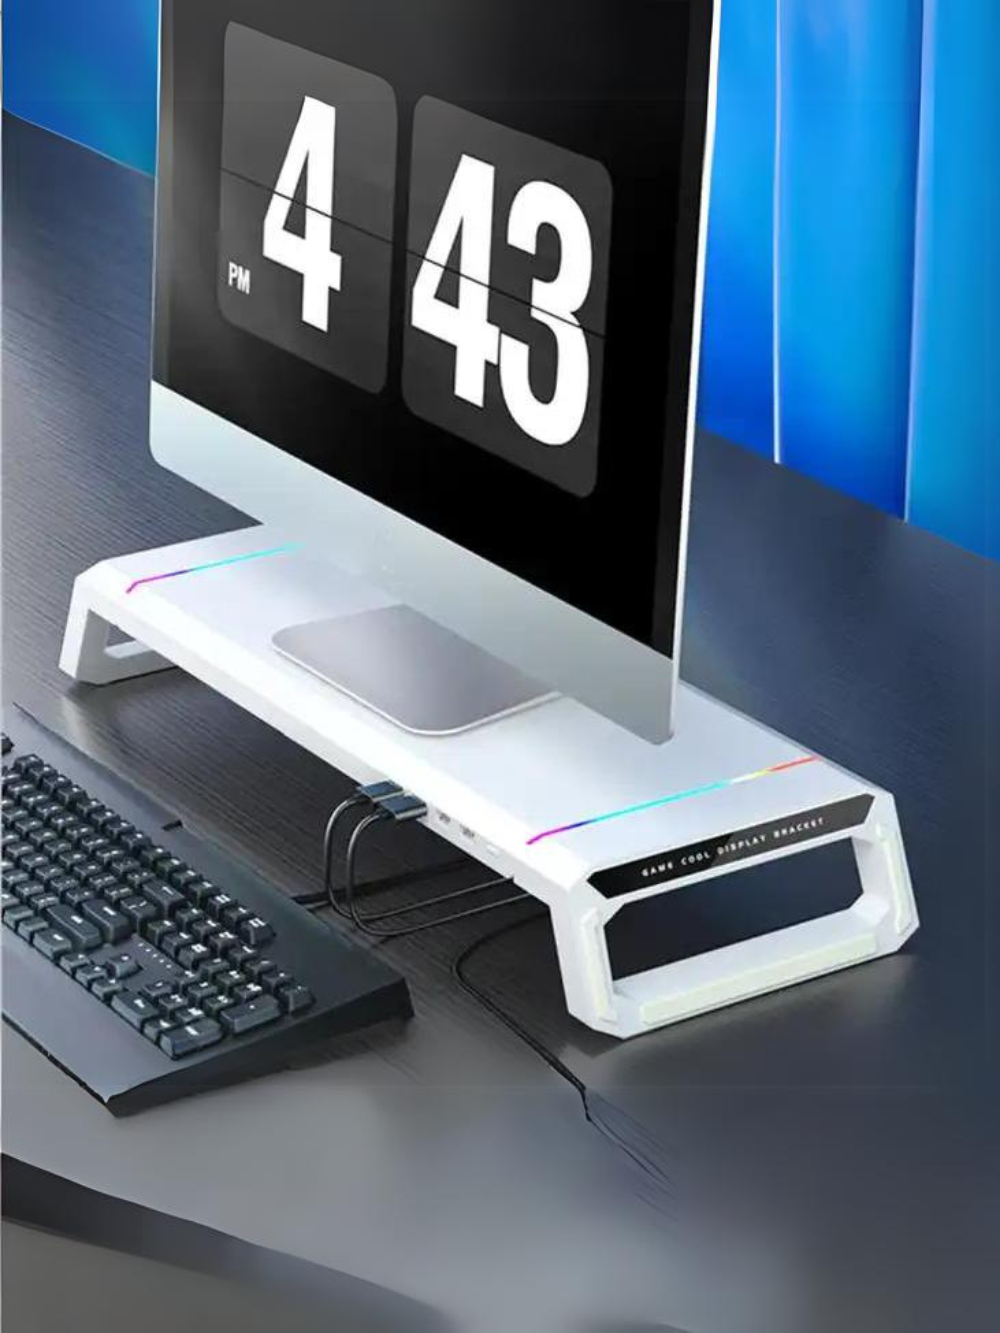 OA313 多功能桌面顯示器增高架 - IFCO Hong Kong